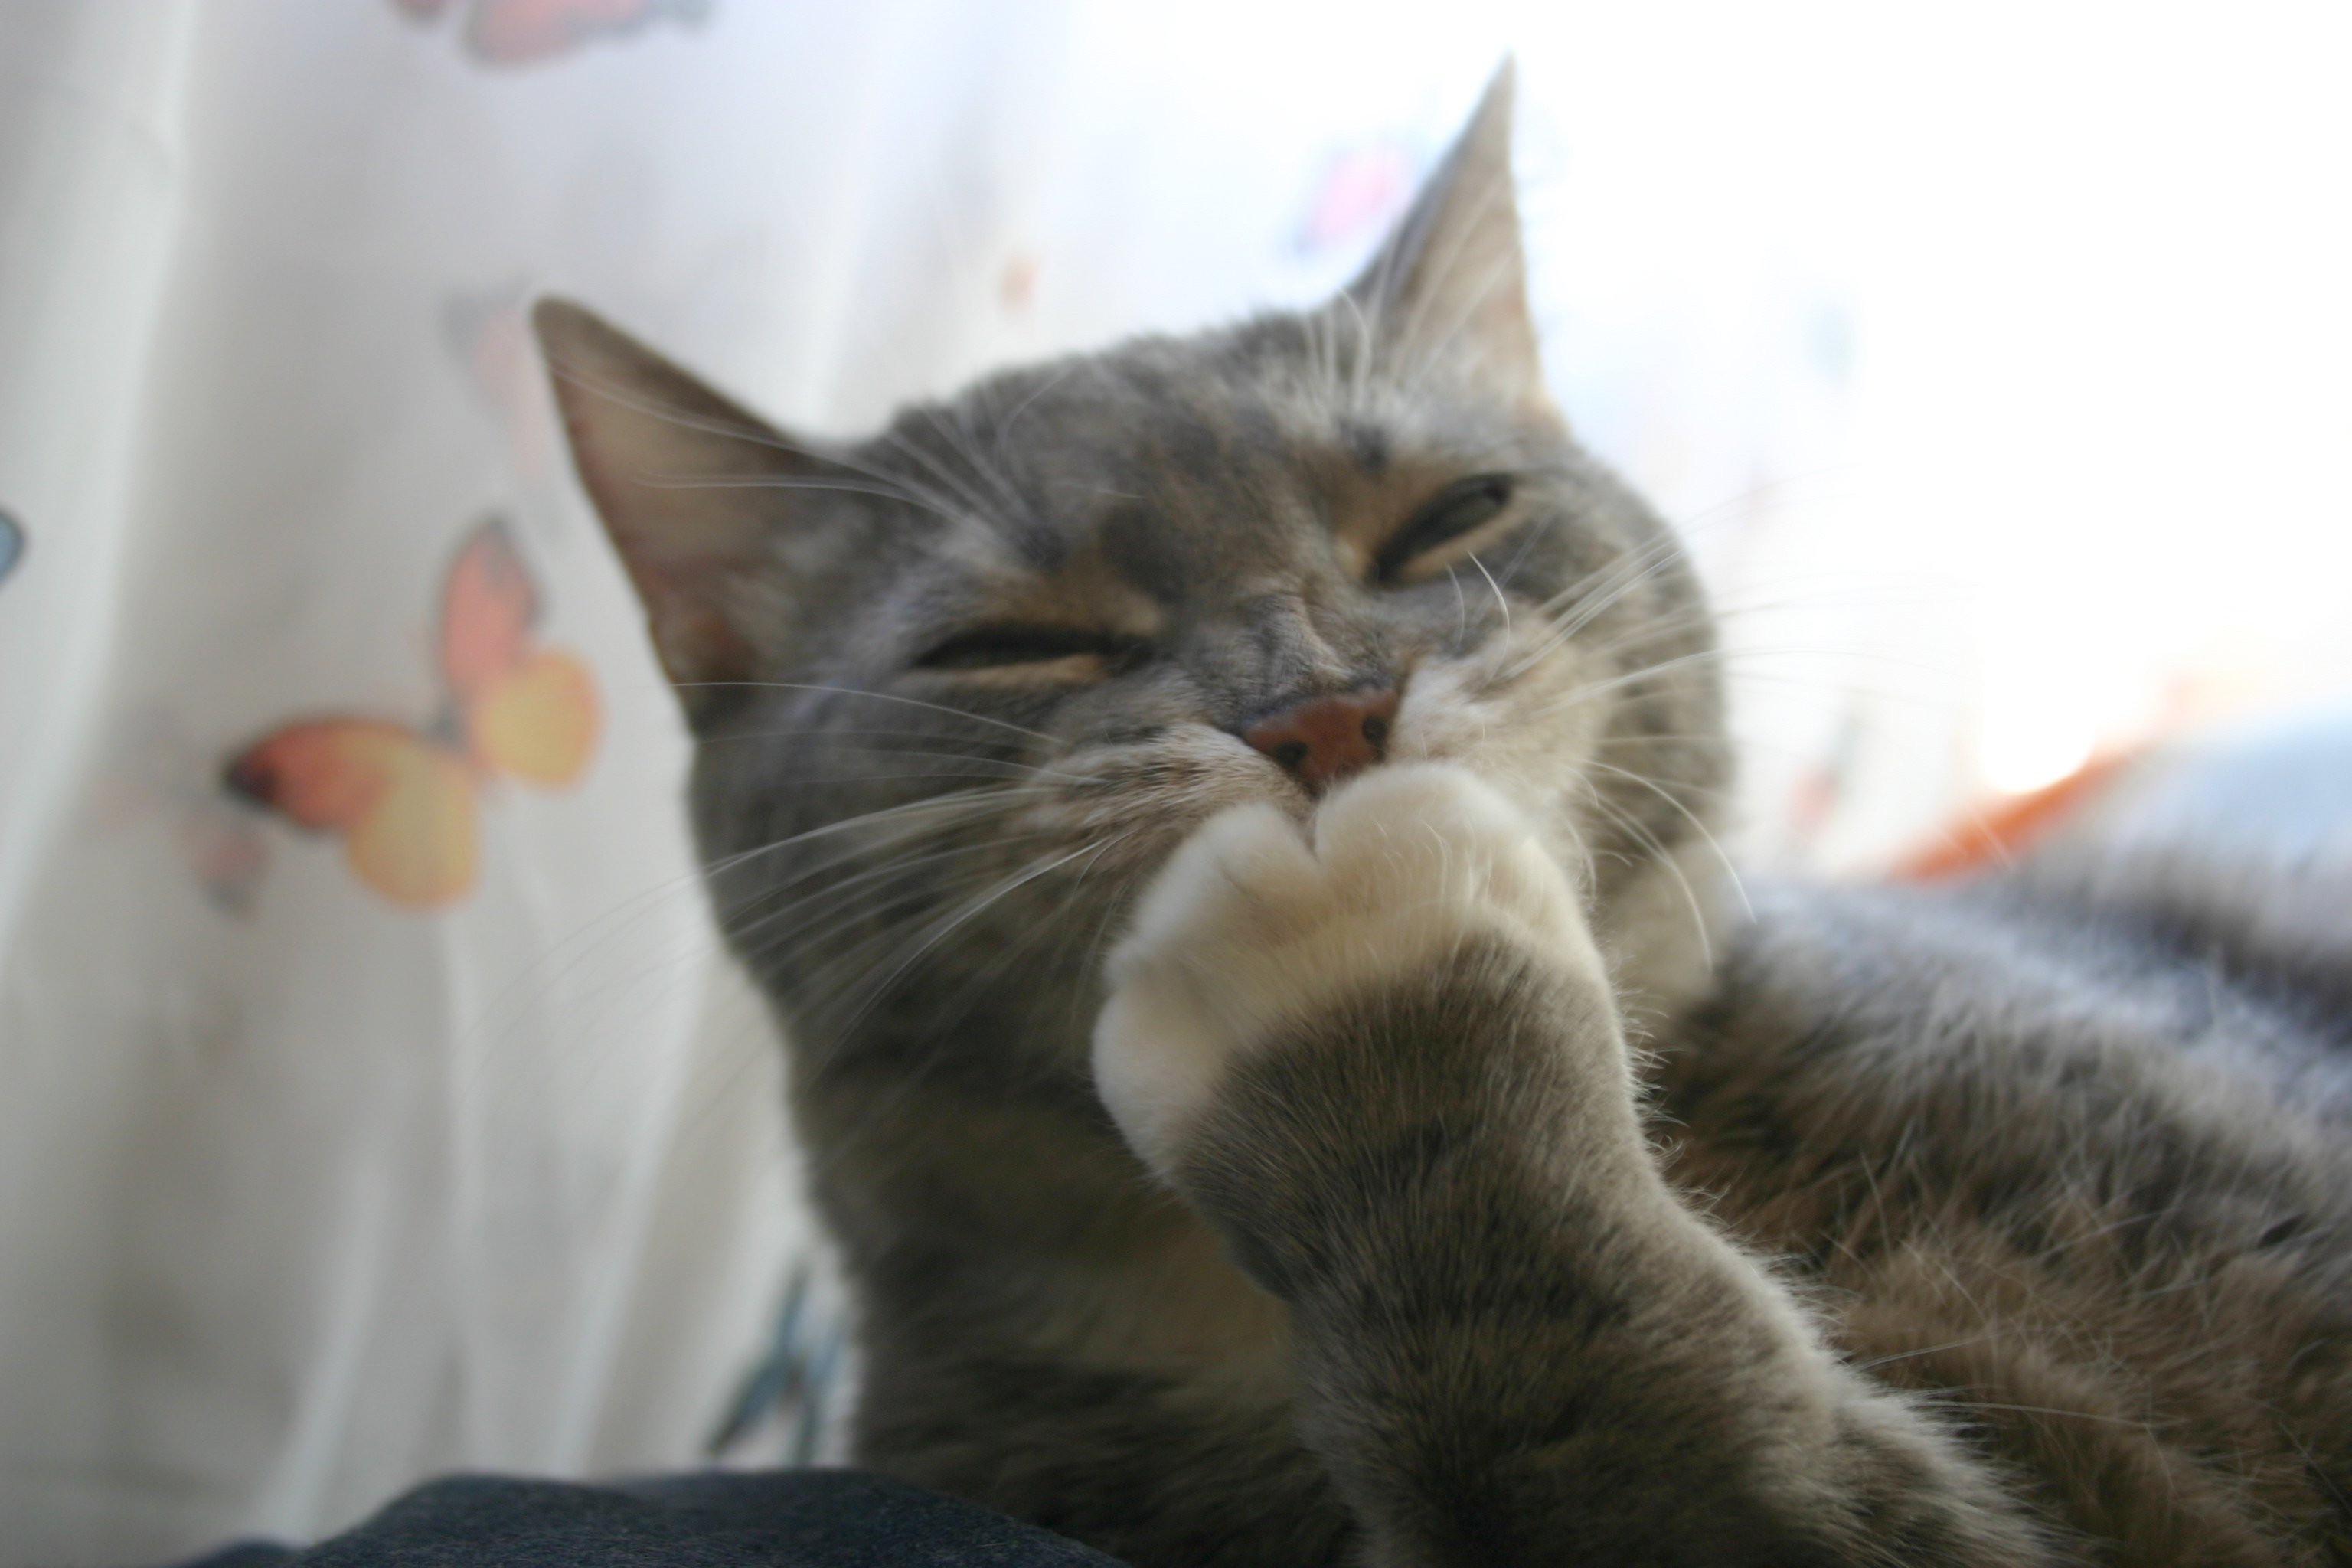 フリー画像 動物写真 哺乳類 ネコ科 猫 ネコ 笑顔 スマイル 画像素材なら 無料 フリー写真素材のフリーフォト